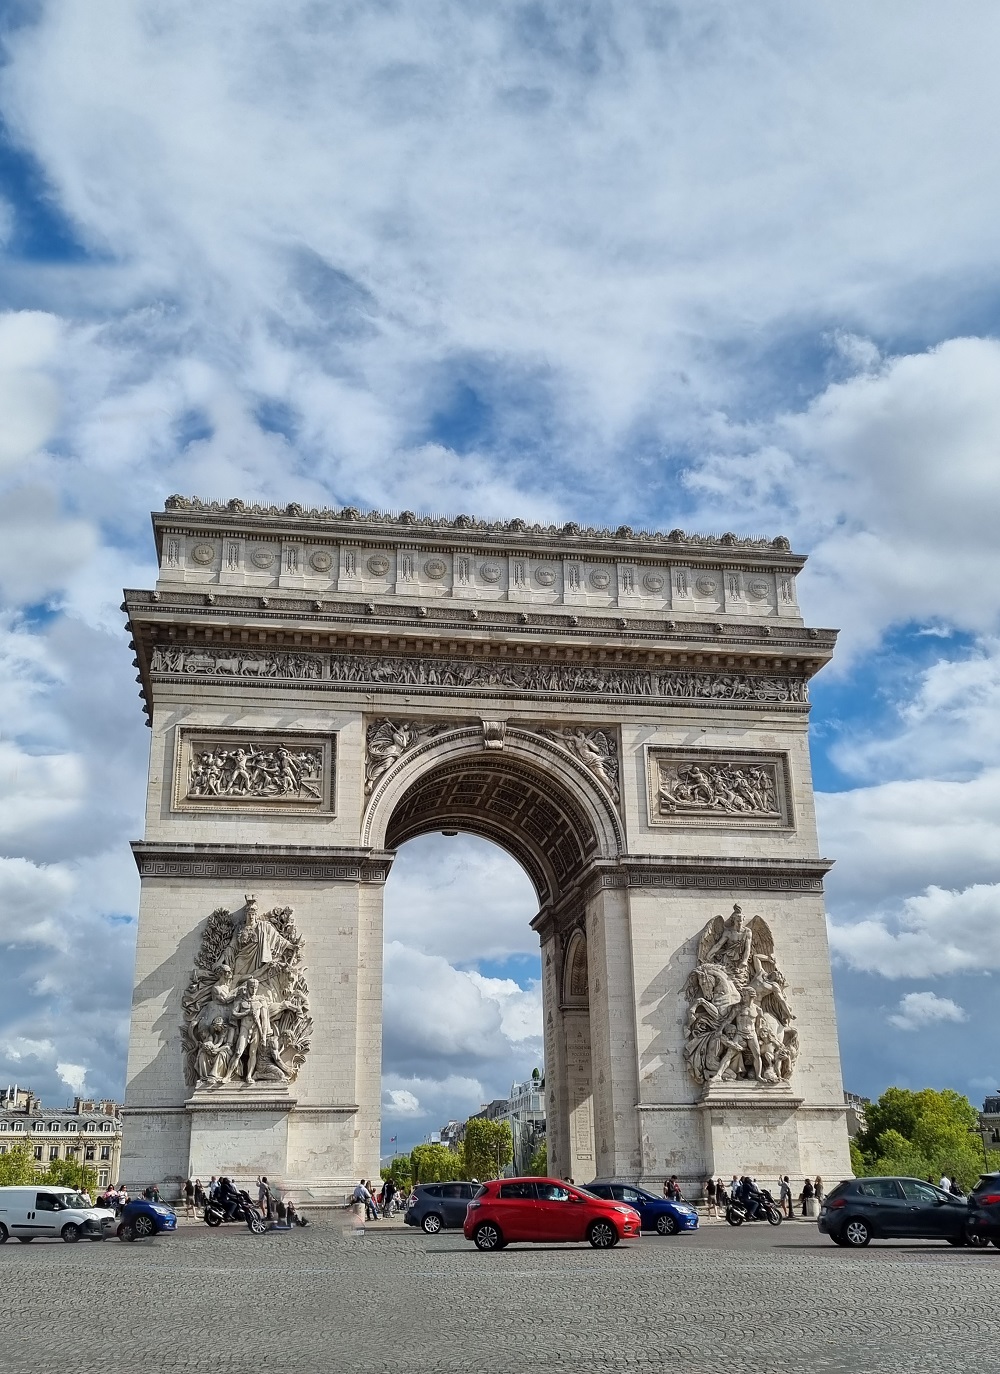 The Arc de Triomphe